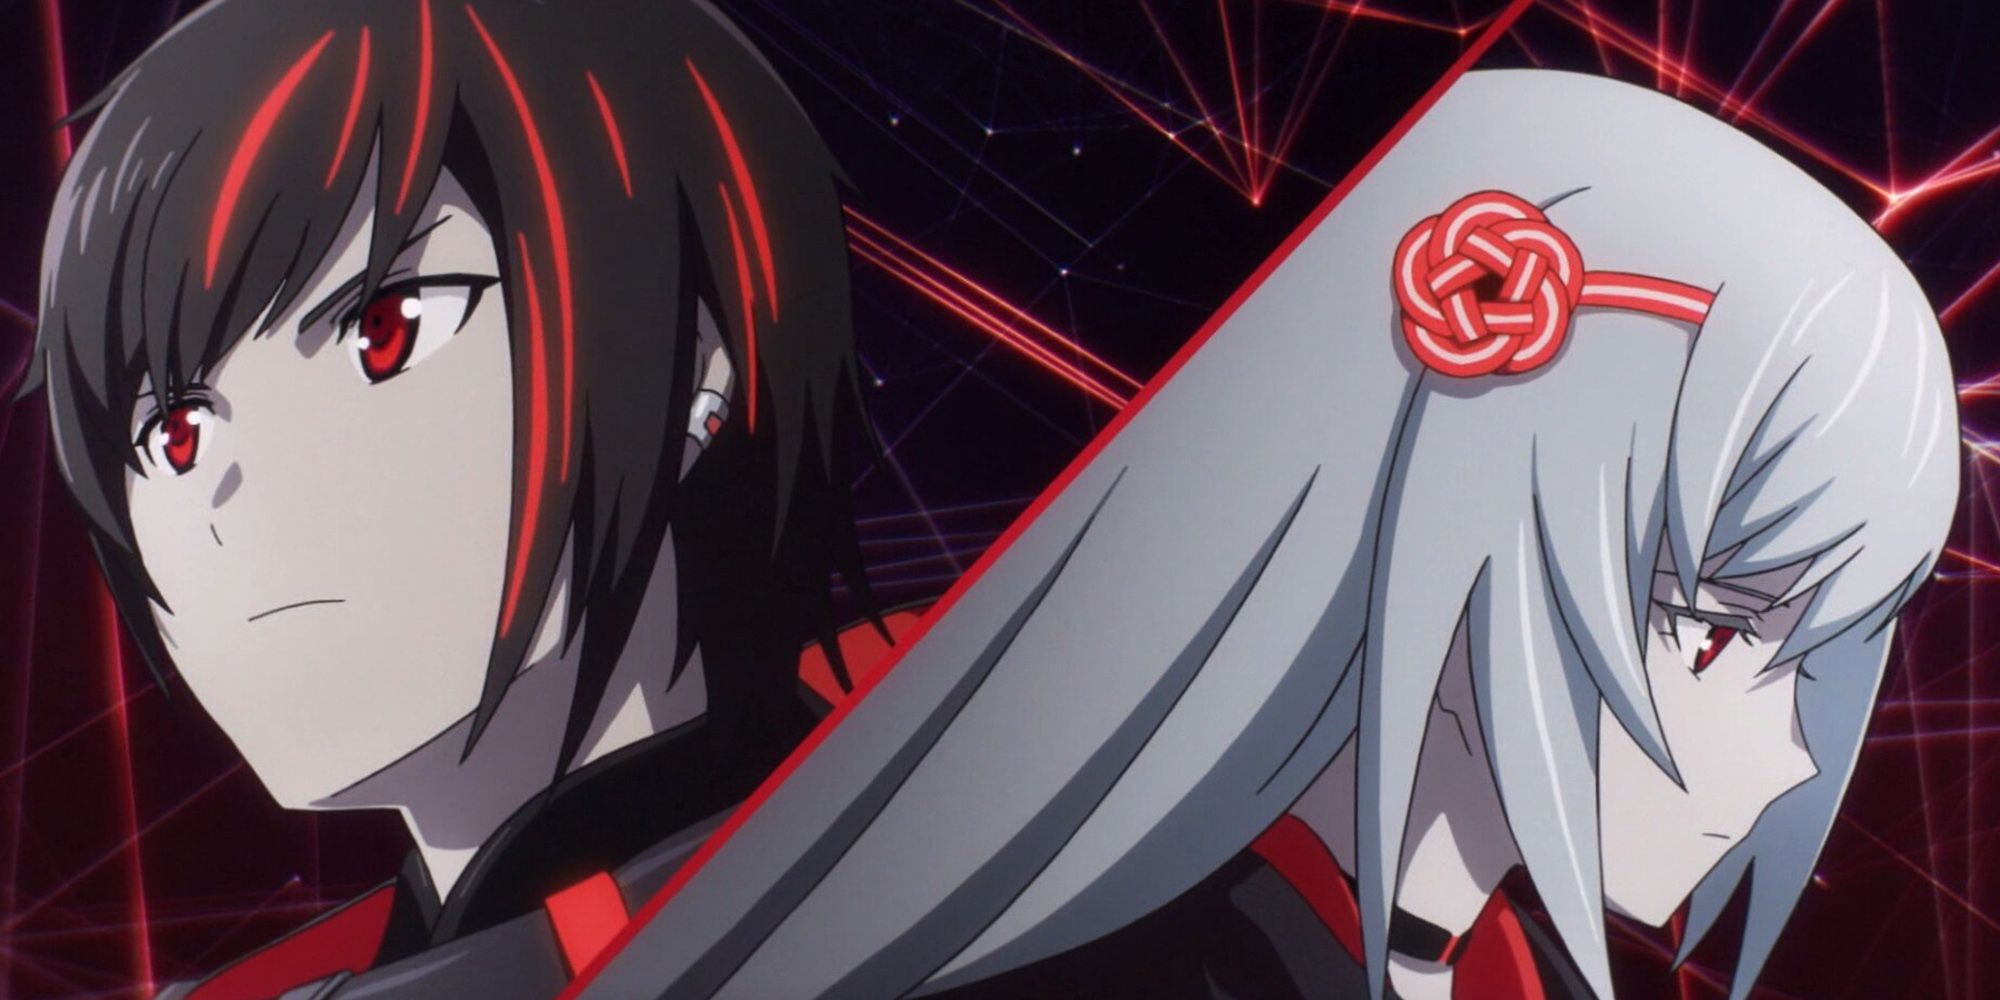 Scarlet Nexus-hovedbillede af Yuito og Kasane side om side i Anime-åbningen